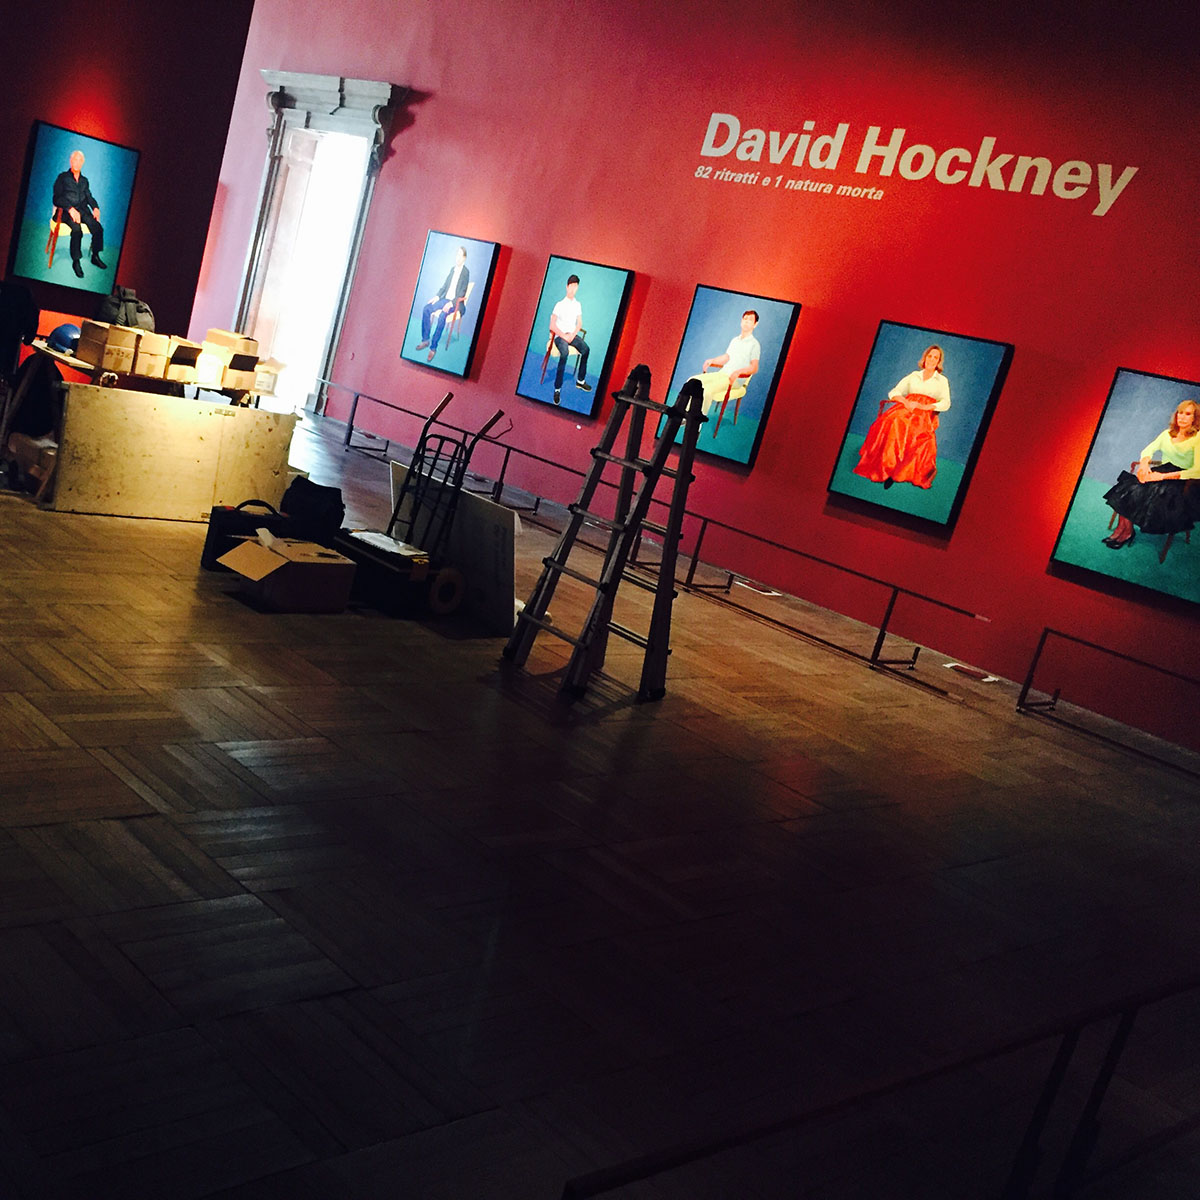 David-Hockney82-Portraits-and-1-Still-life-003 